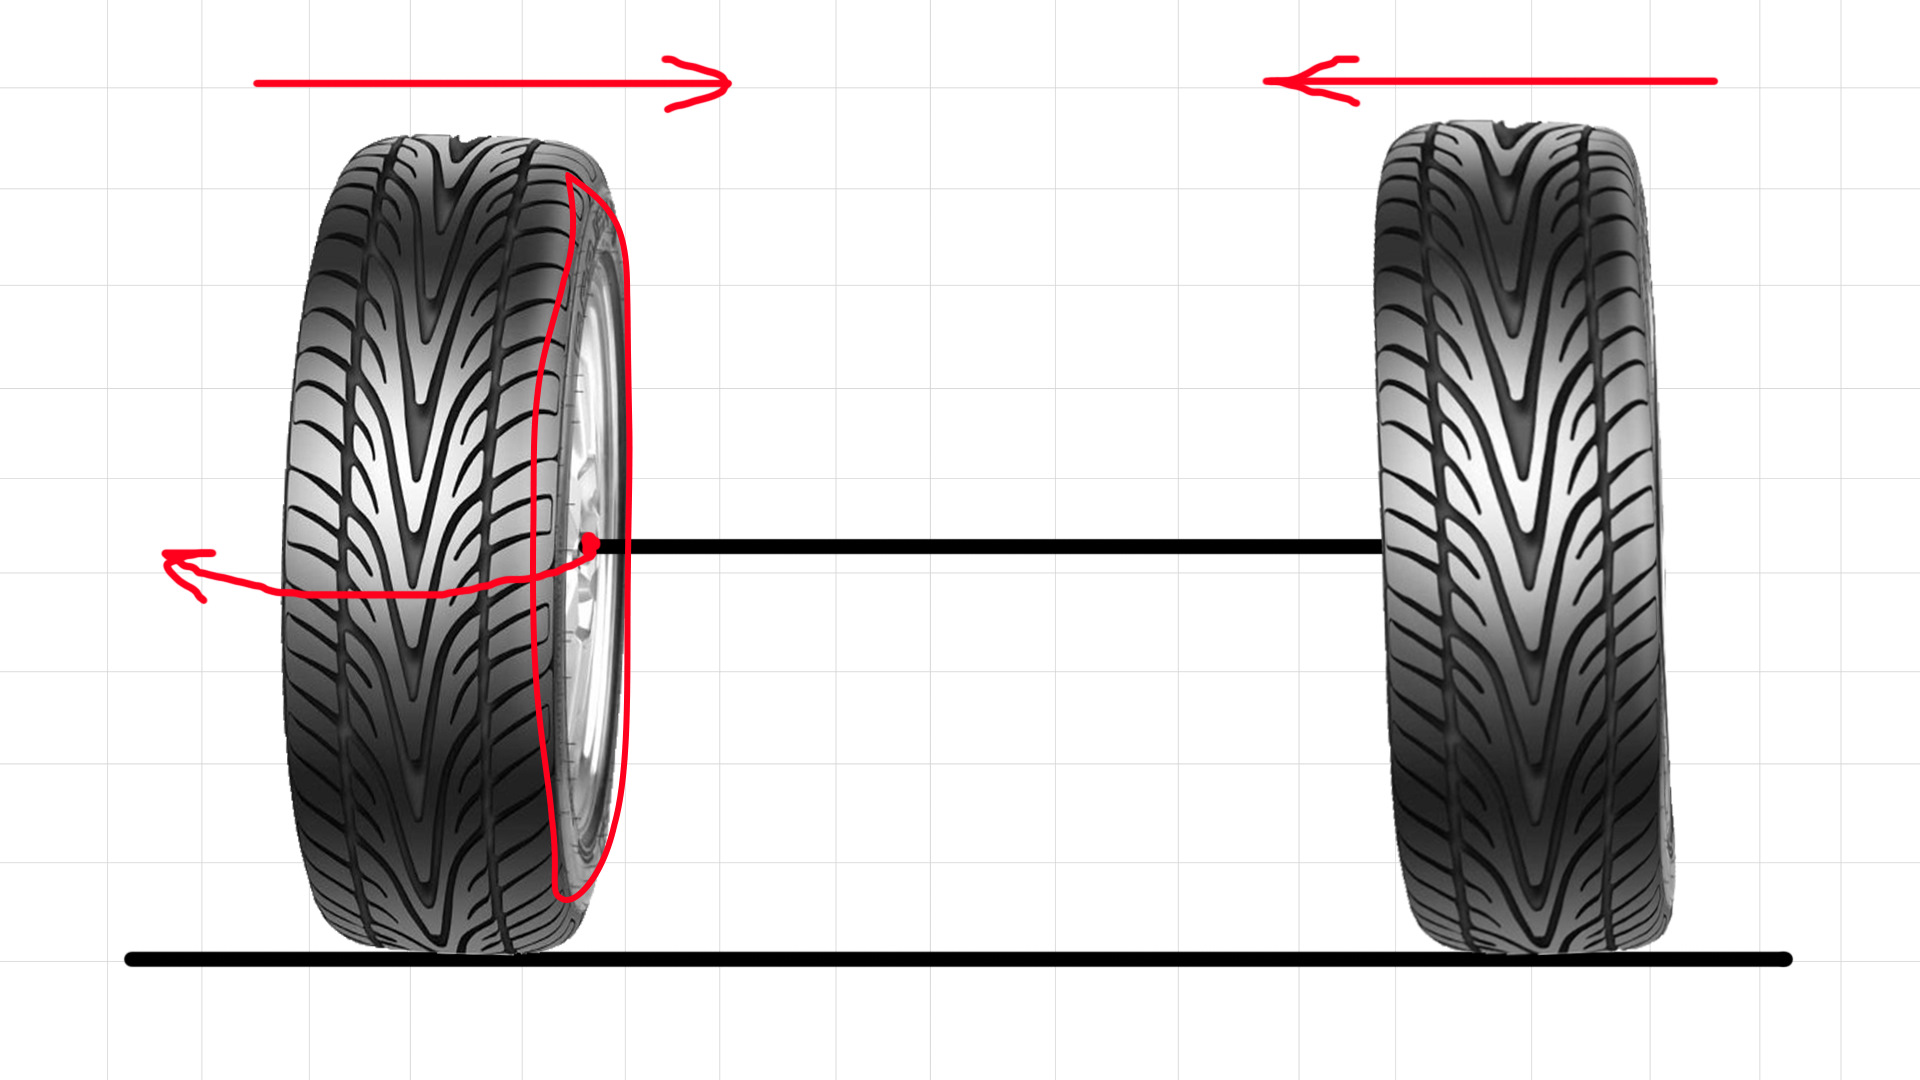 Разные колеса на осях можно ли. Колесо шина спереди. Расположение колеса по узору. Колесо вид спереди. Разметка резины.